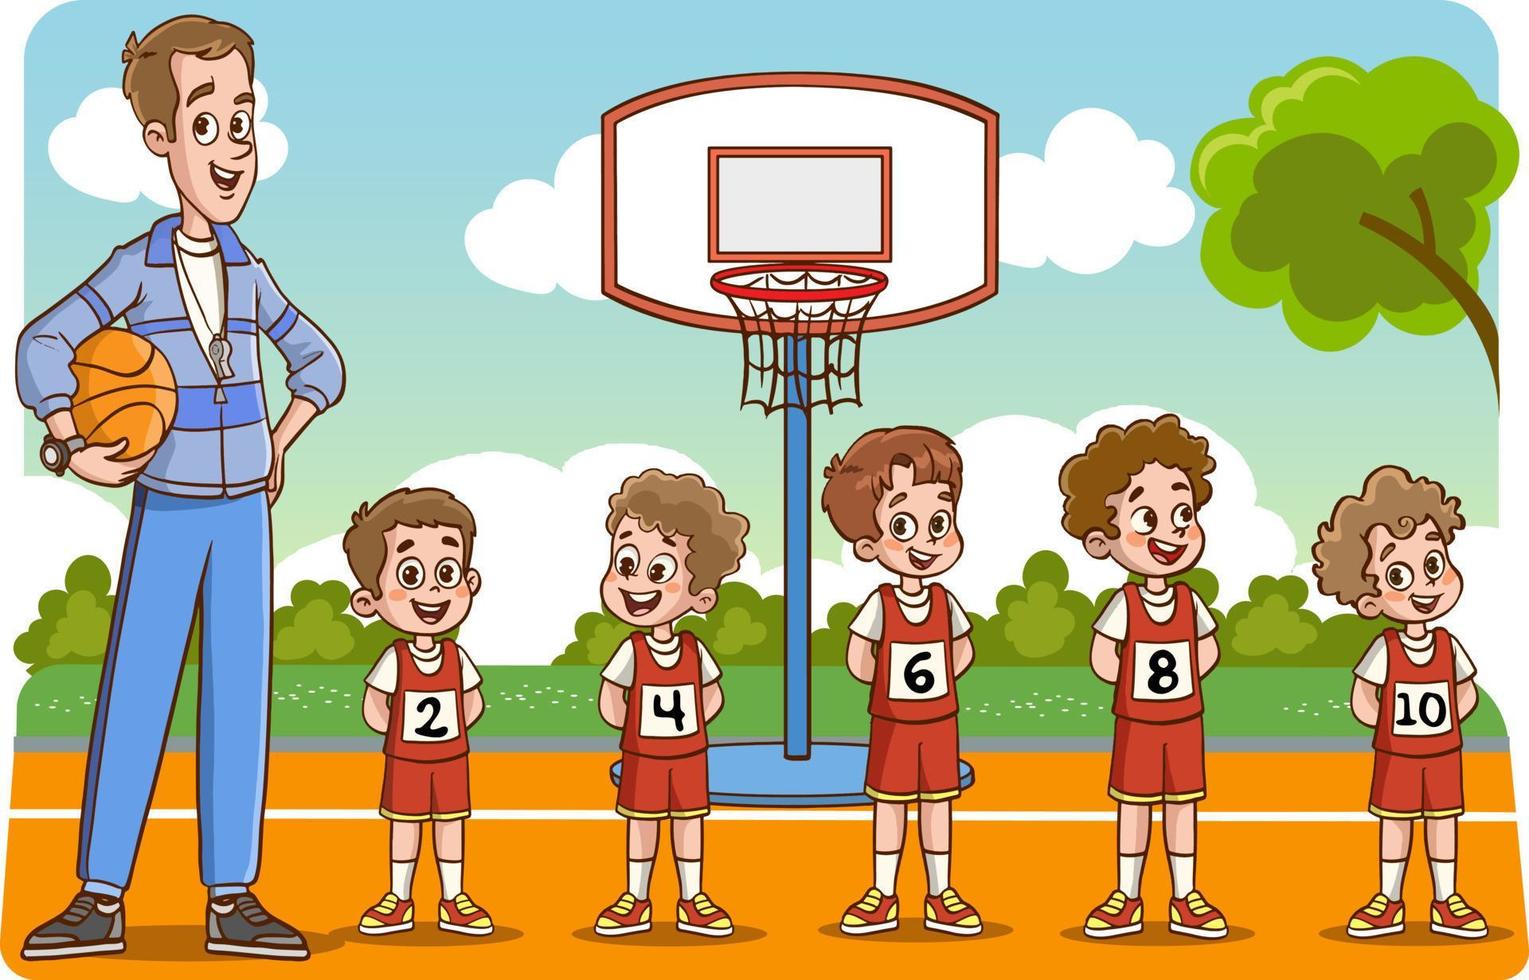 vektor illustration av barn basketboll team